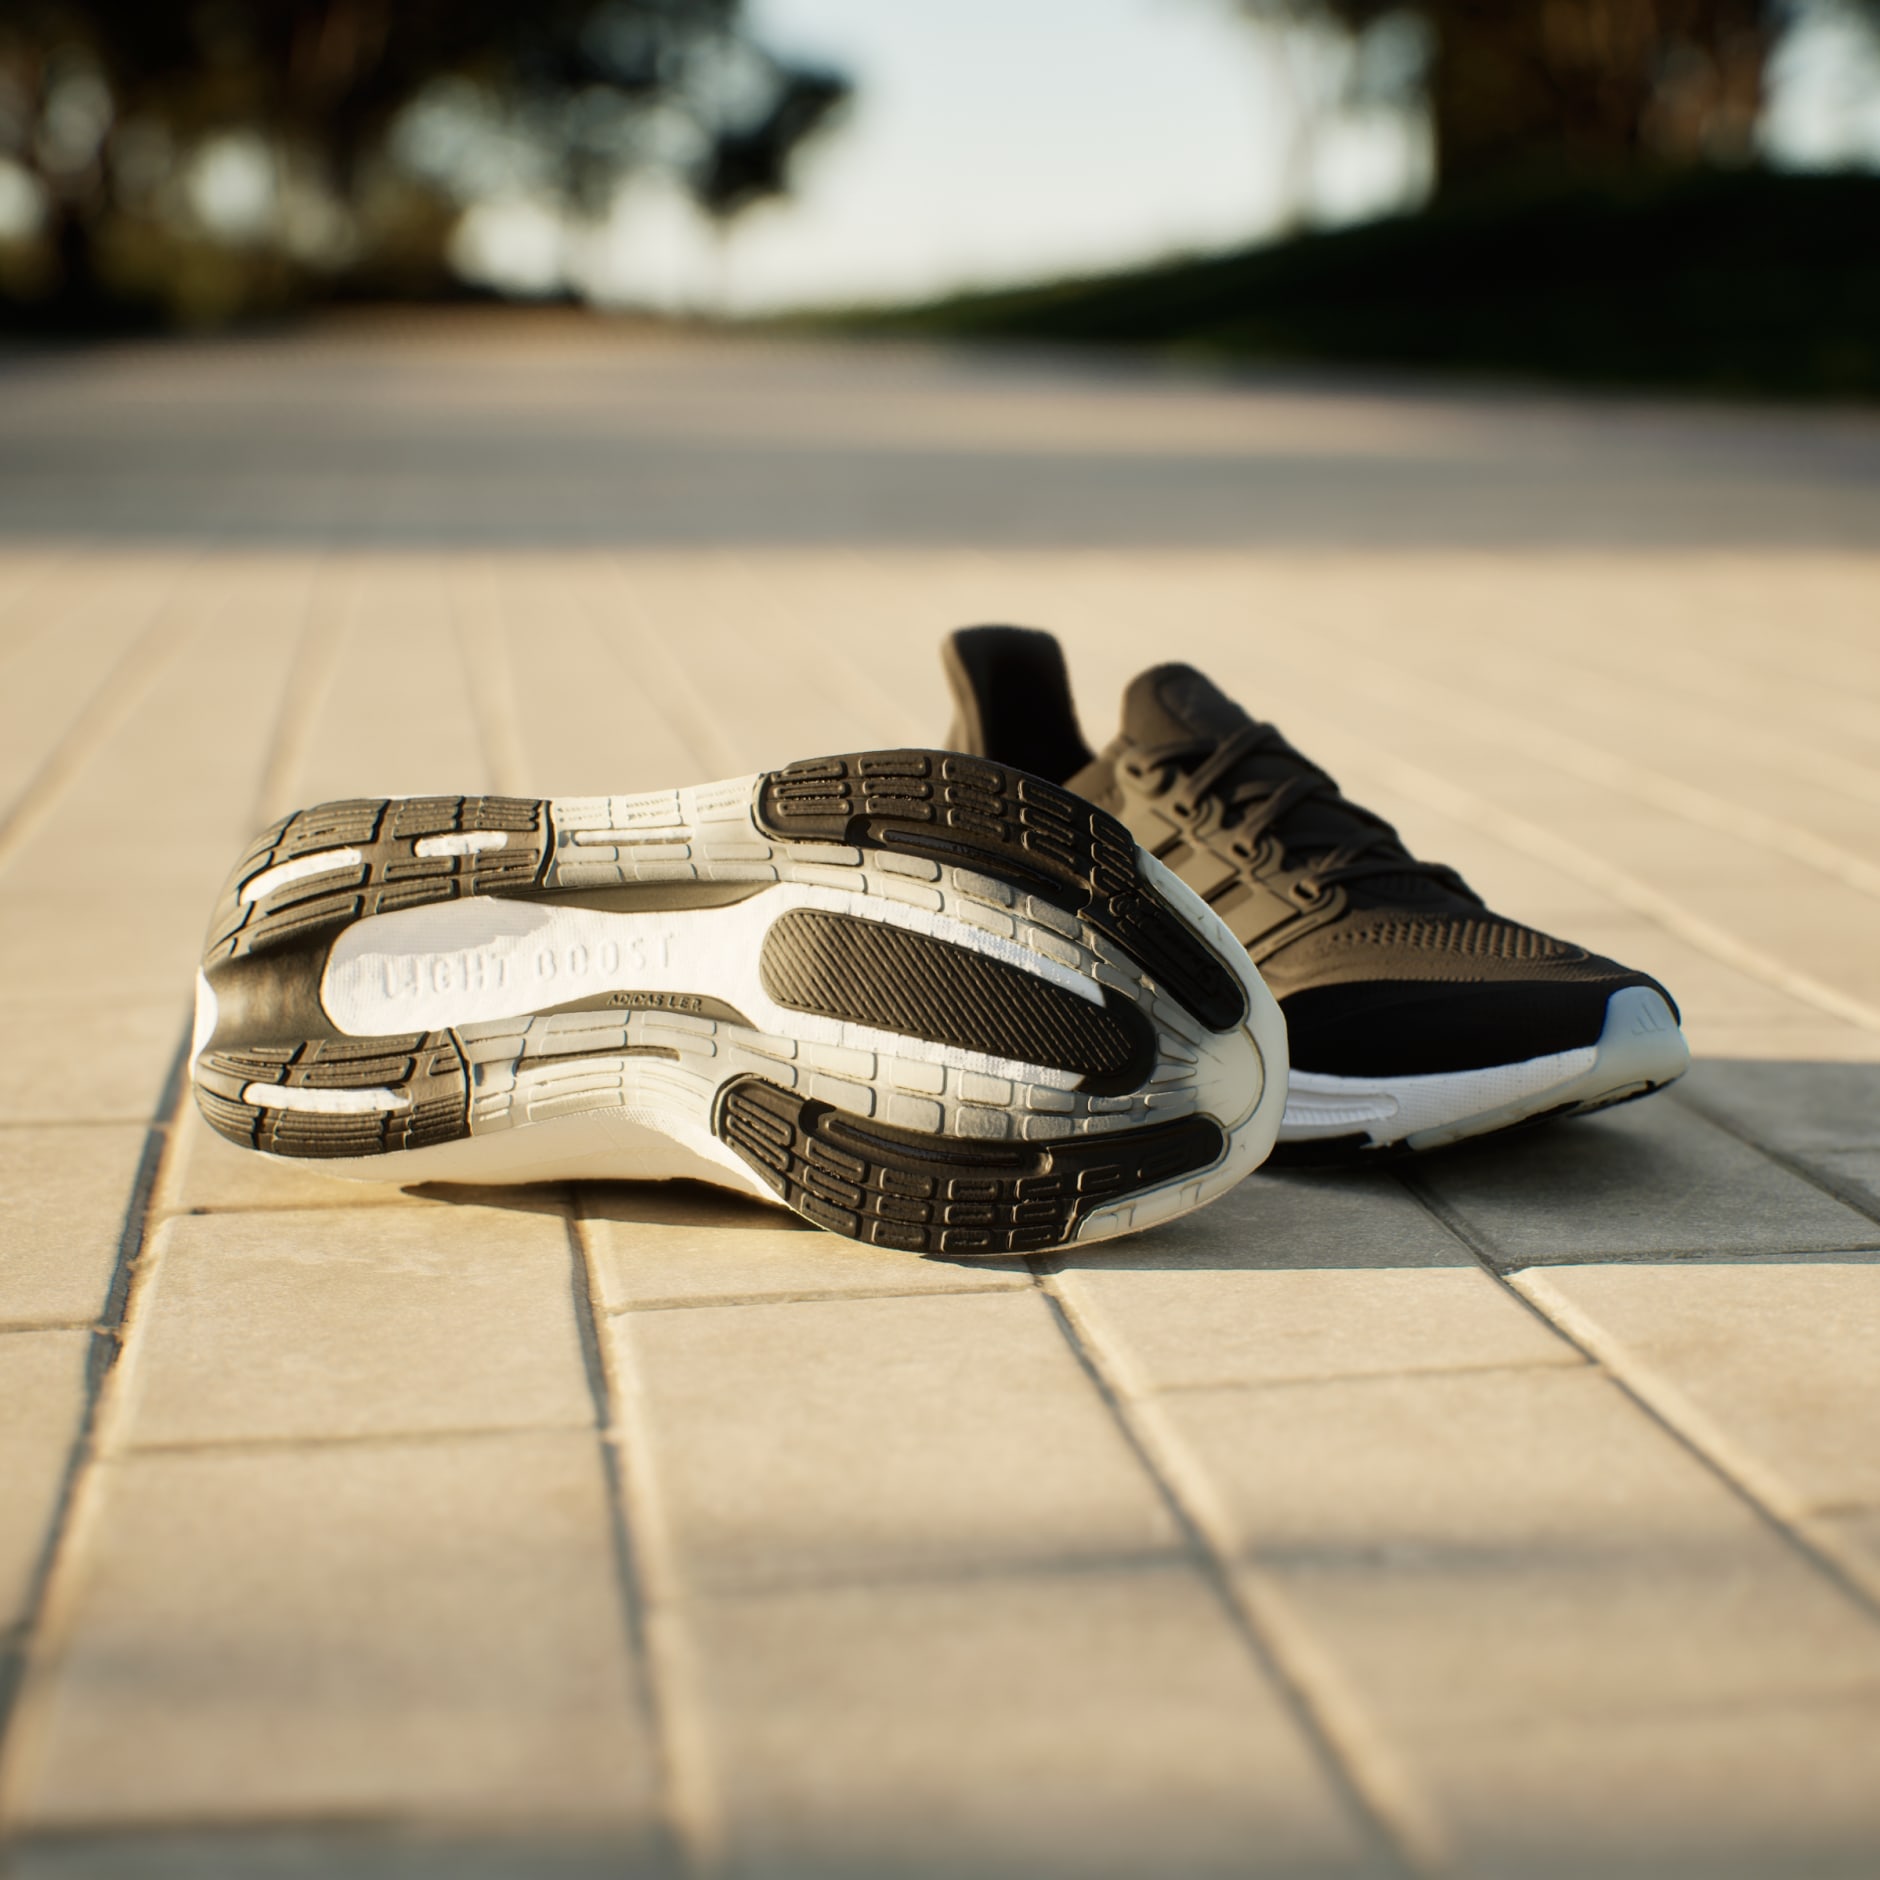 Adidas Ultraboost Light - Chaussures running homme